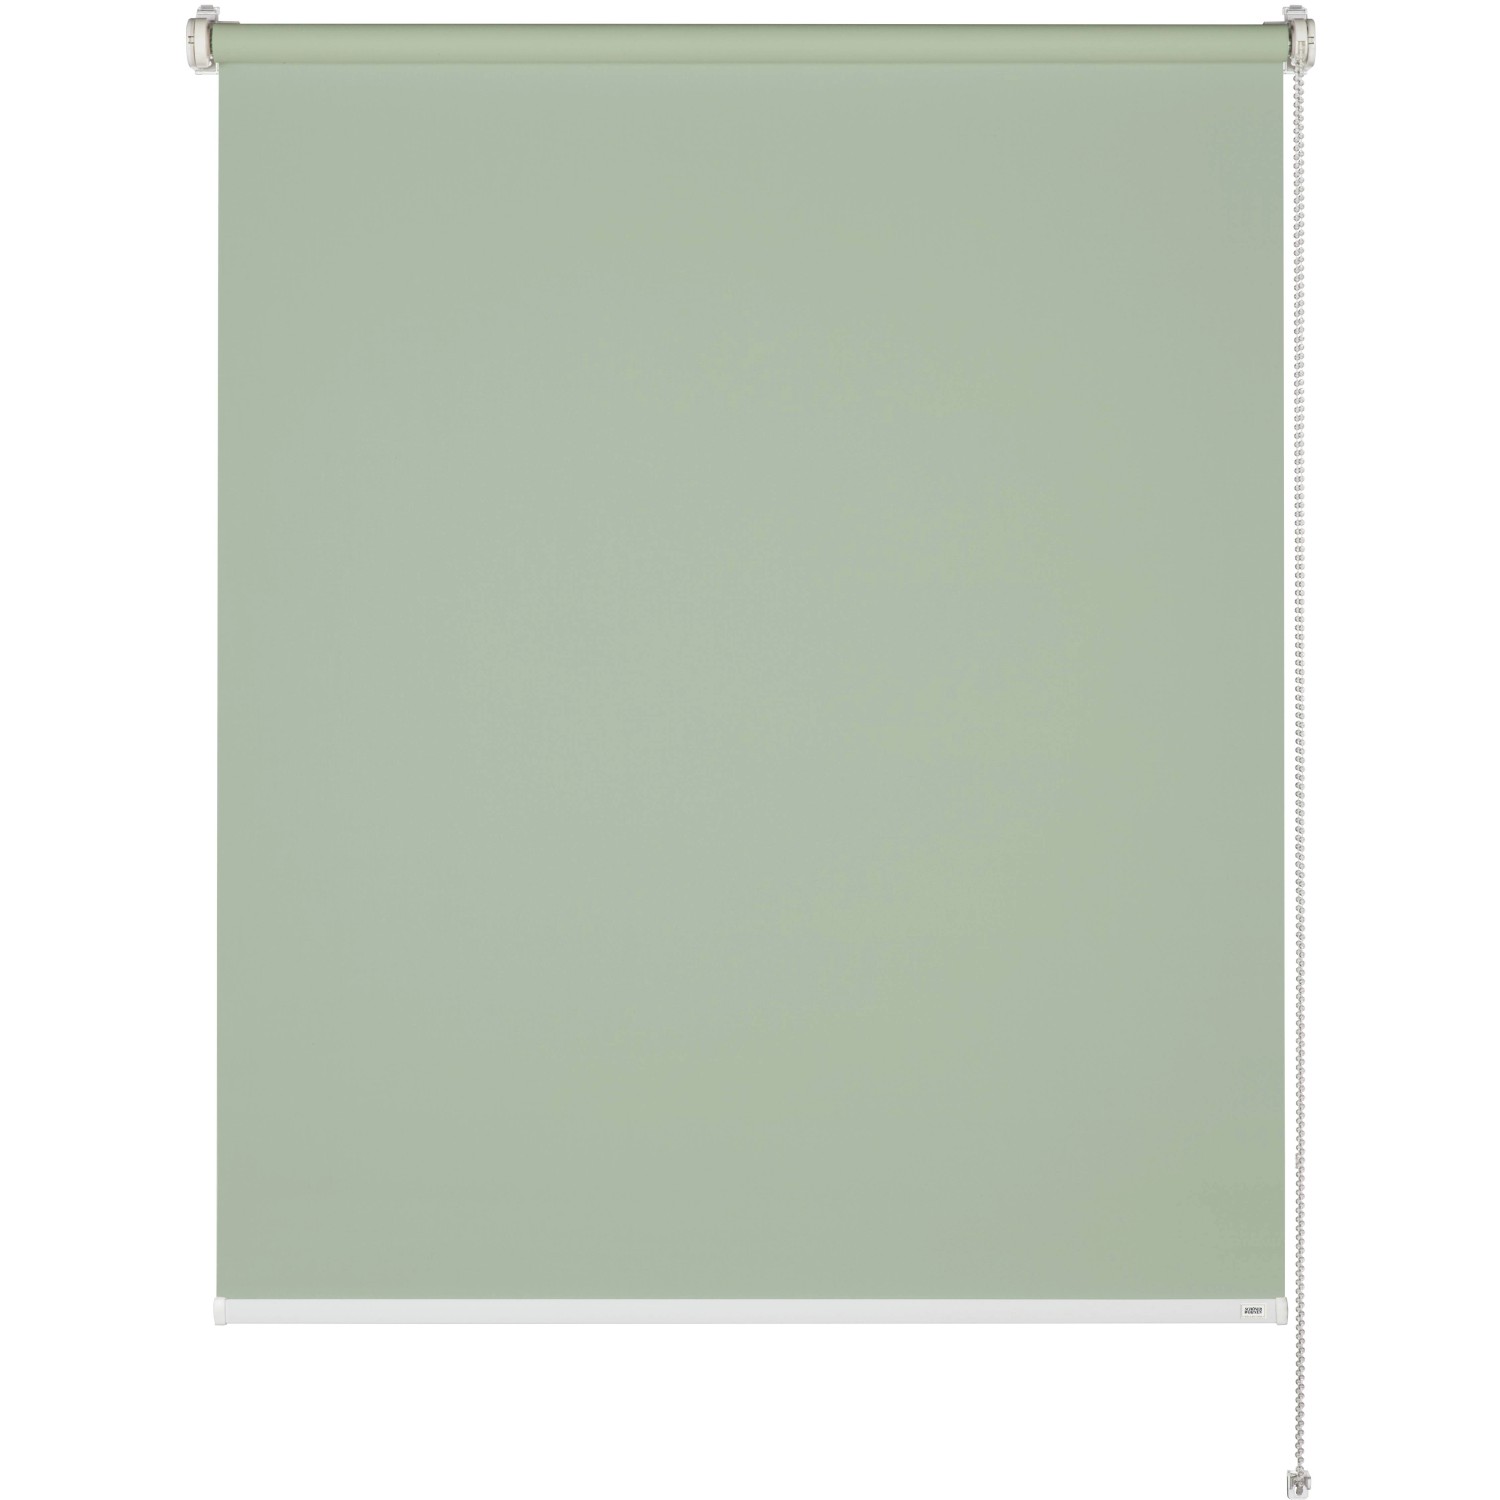 Schöner Wohnen Tageslicht-Rollo Tizia 100 cm x 150 cm Grün